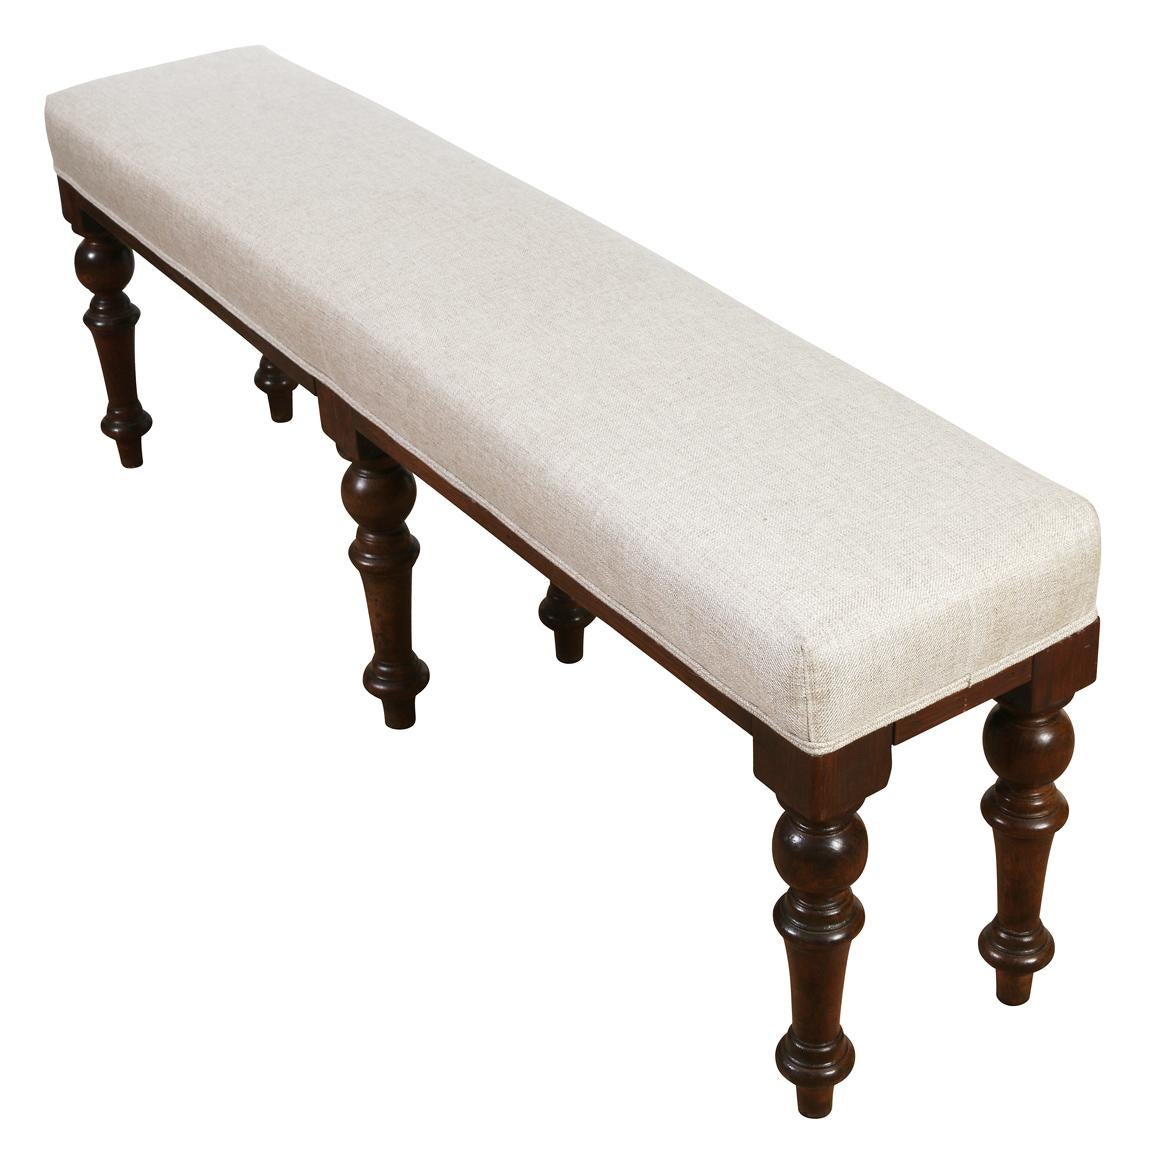 Un long banc anglais avec des pieds tournés en acajou, tapissé d'un lin naturel - parfait pour le pied d'un lit ou devant la cheminée.